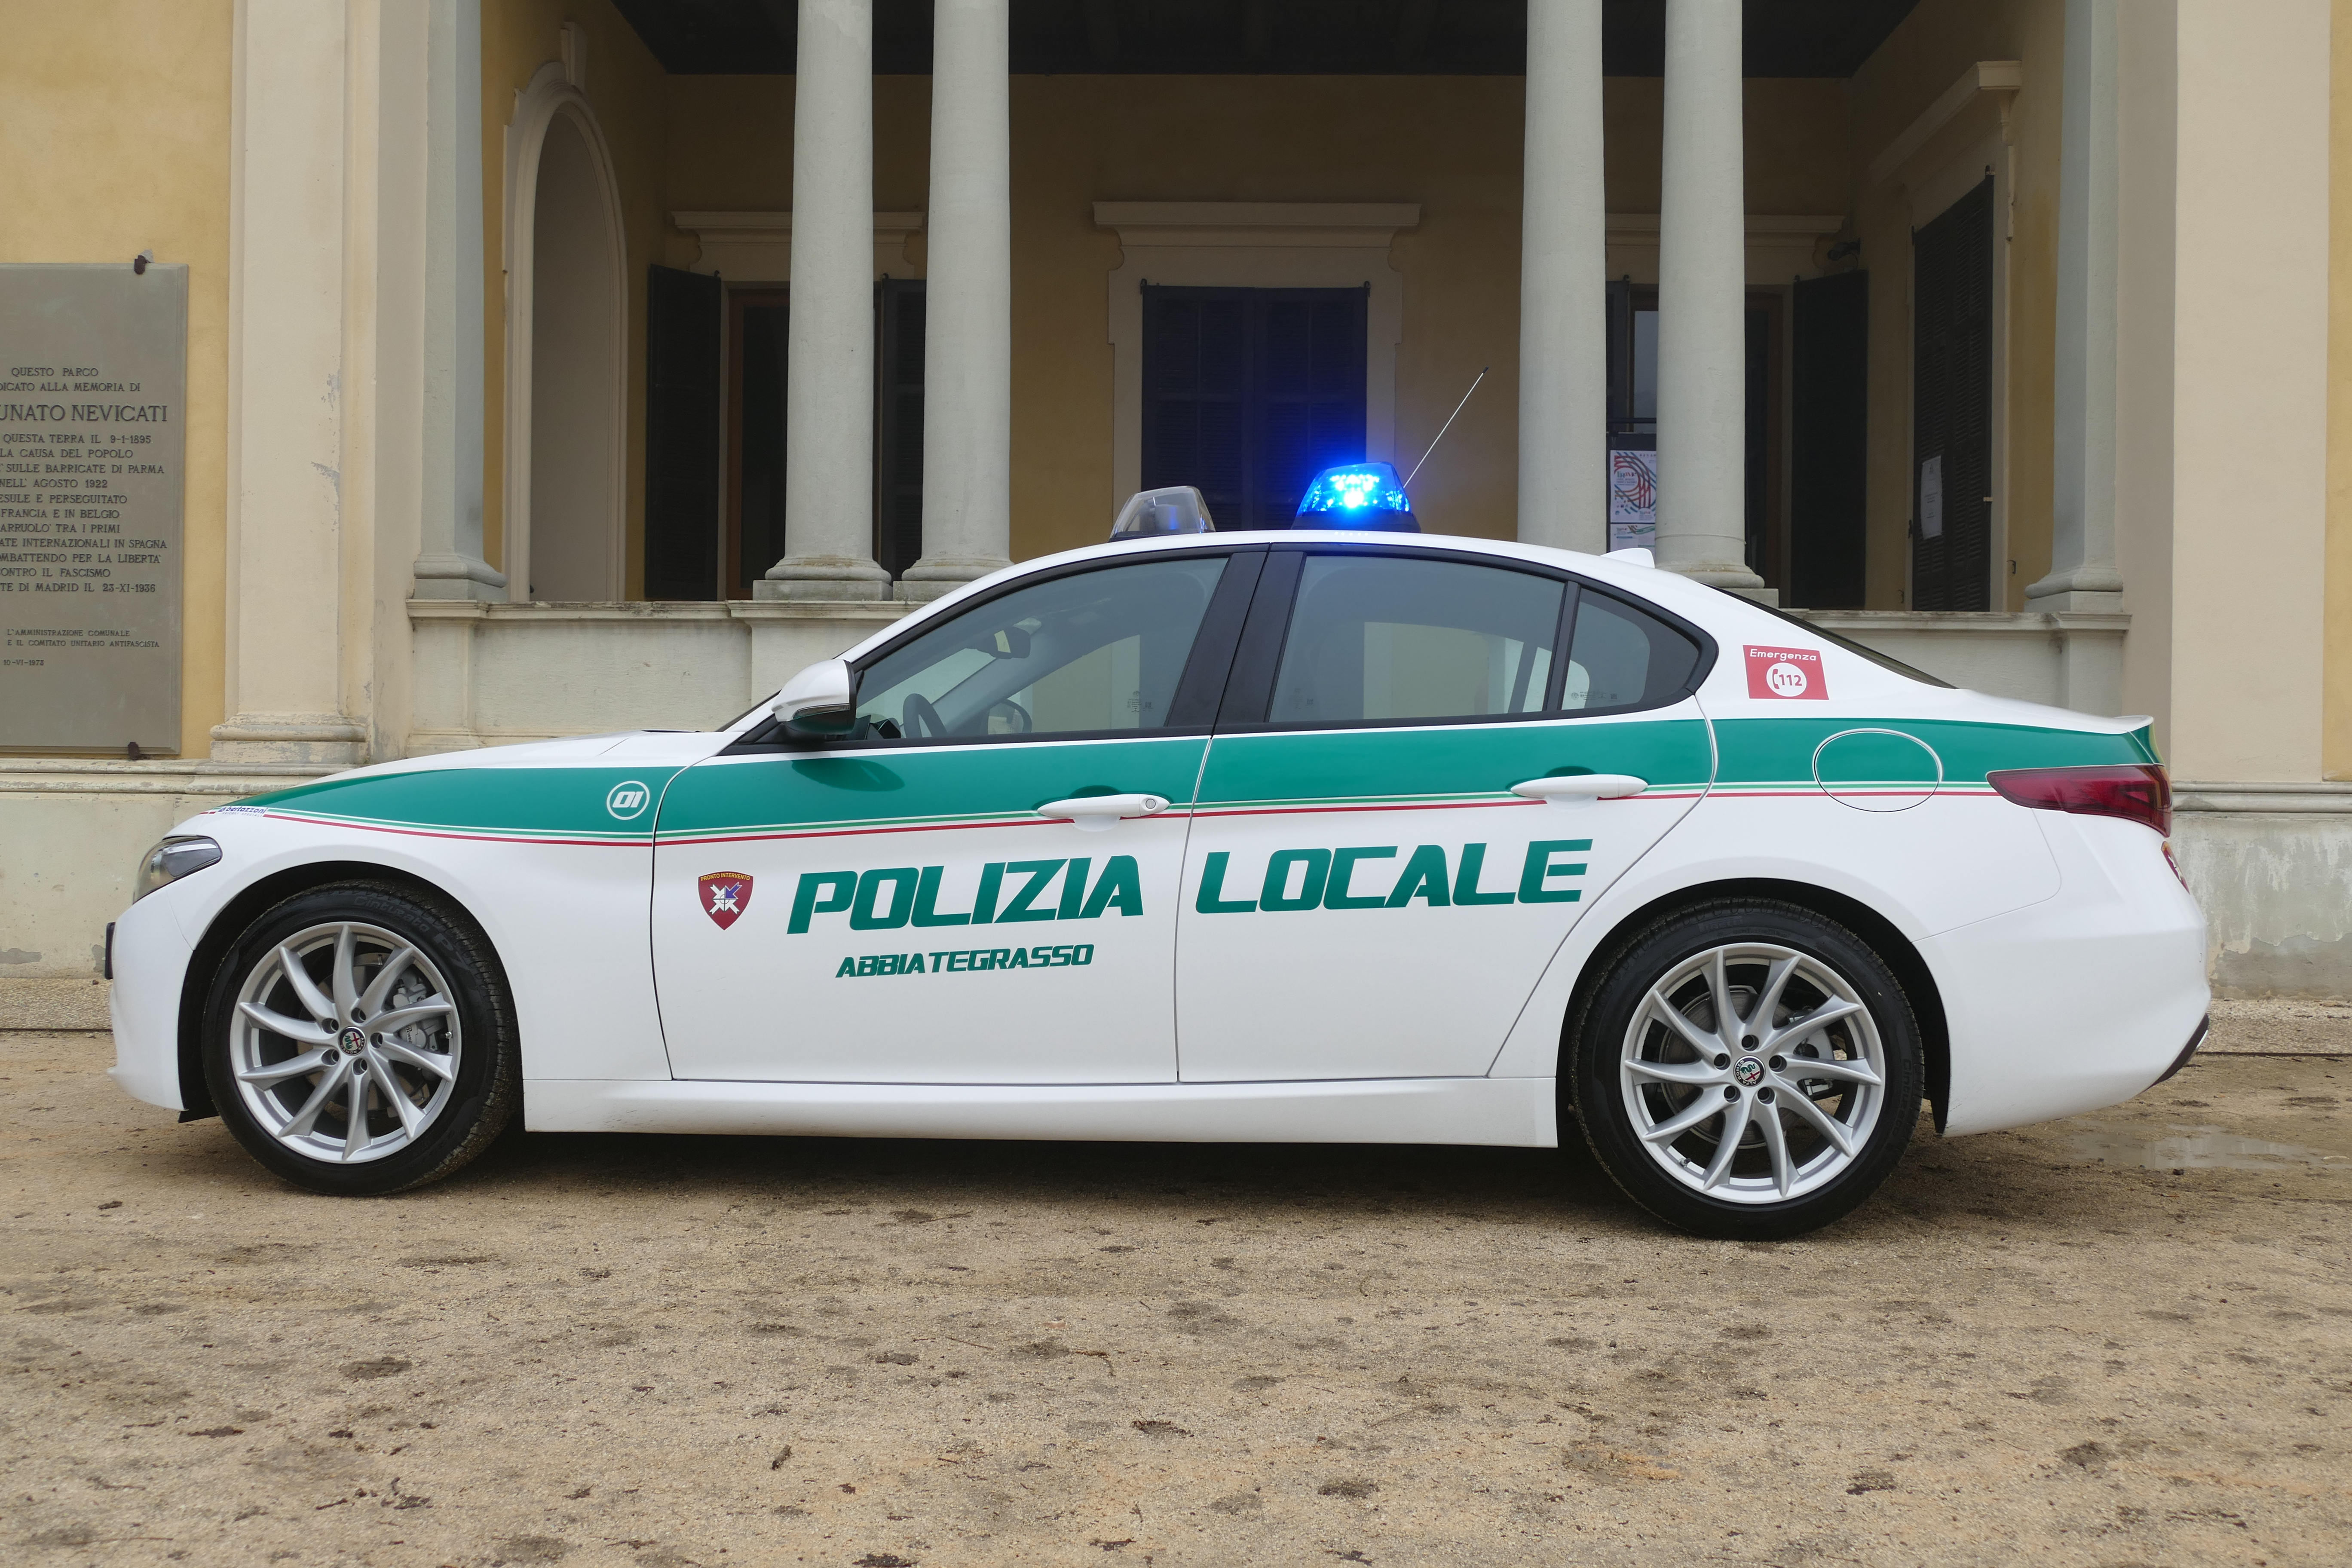 Polizia Locale reparto trasporto organi: Abbiategrasso crea il primo servizio in Italia su Alfa Romeo Giulia | Emergency Live 5